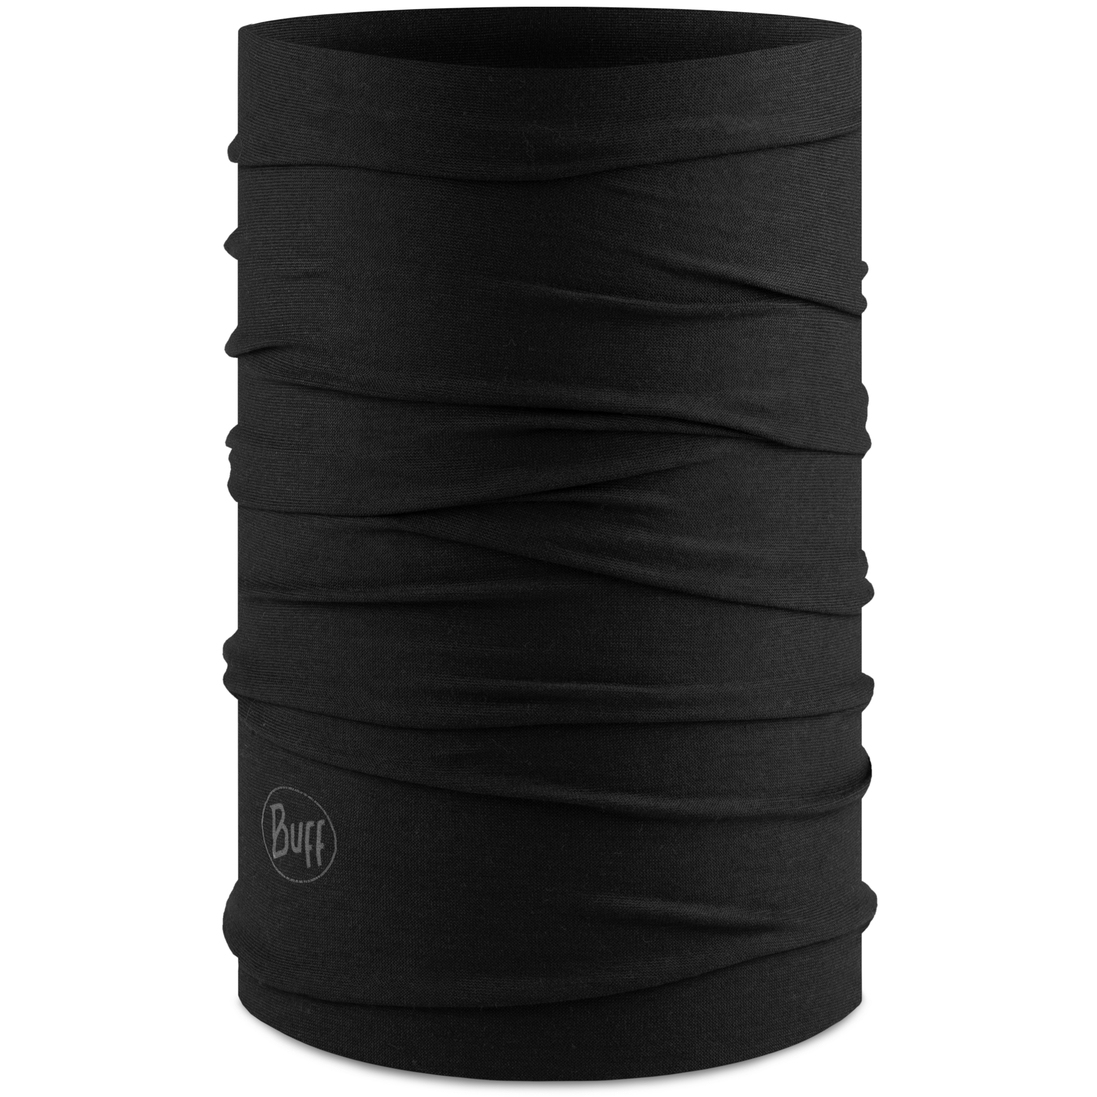 Productfoto van Buff® Original EcoStretch Multifunctionele Doek - Solid Black